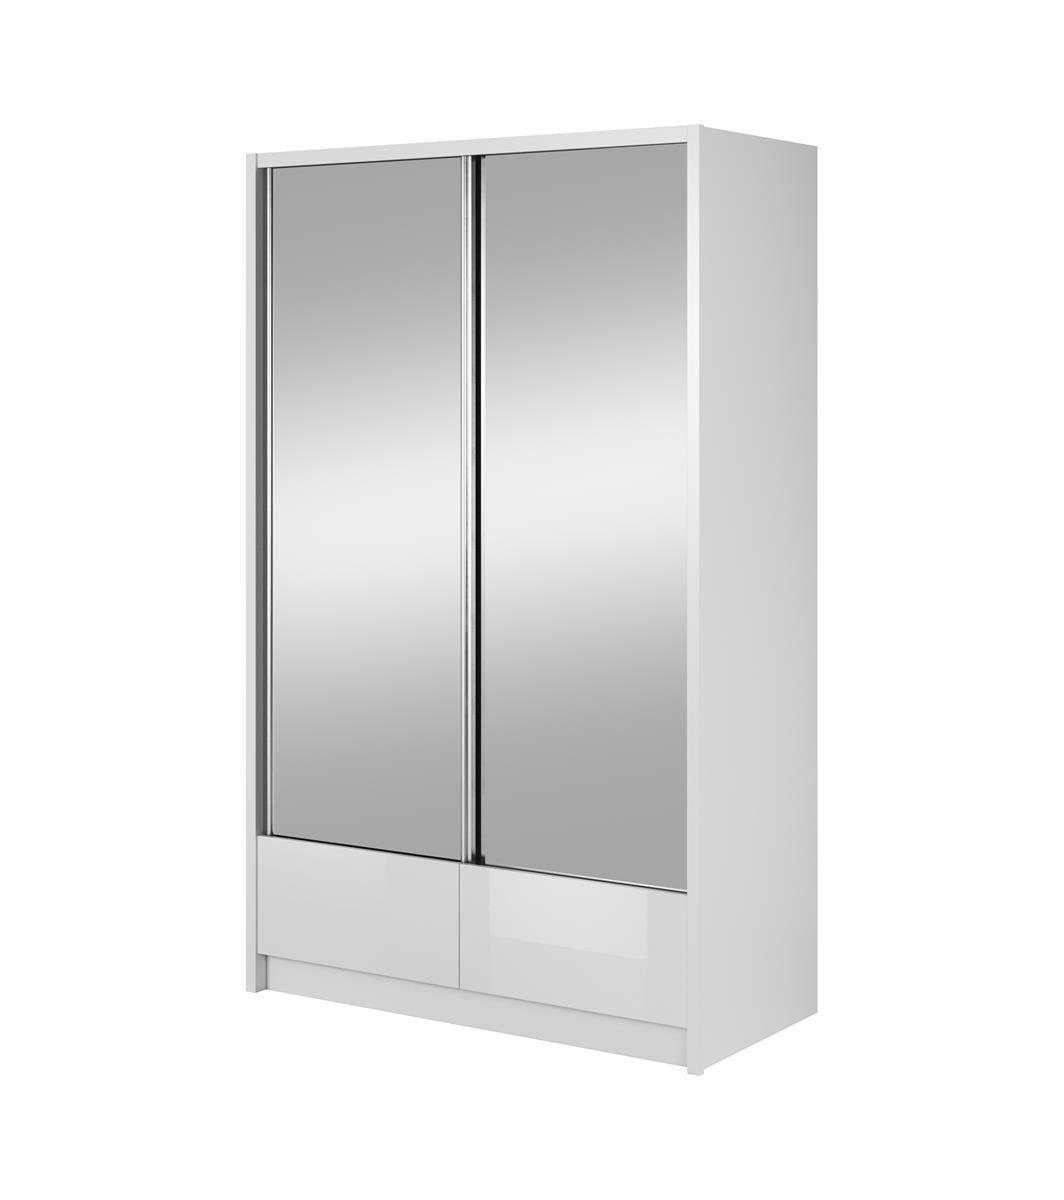 Beautysofa Spiegelschrank Lara II 2x schwarzes Spiegelnd, Wohnzimmer (weißes mit Schrank oder Kleiderschrank, Schiebtüren Garderobe) für